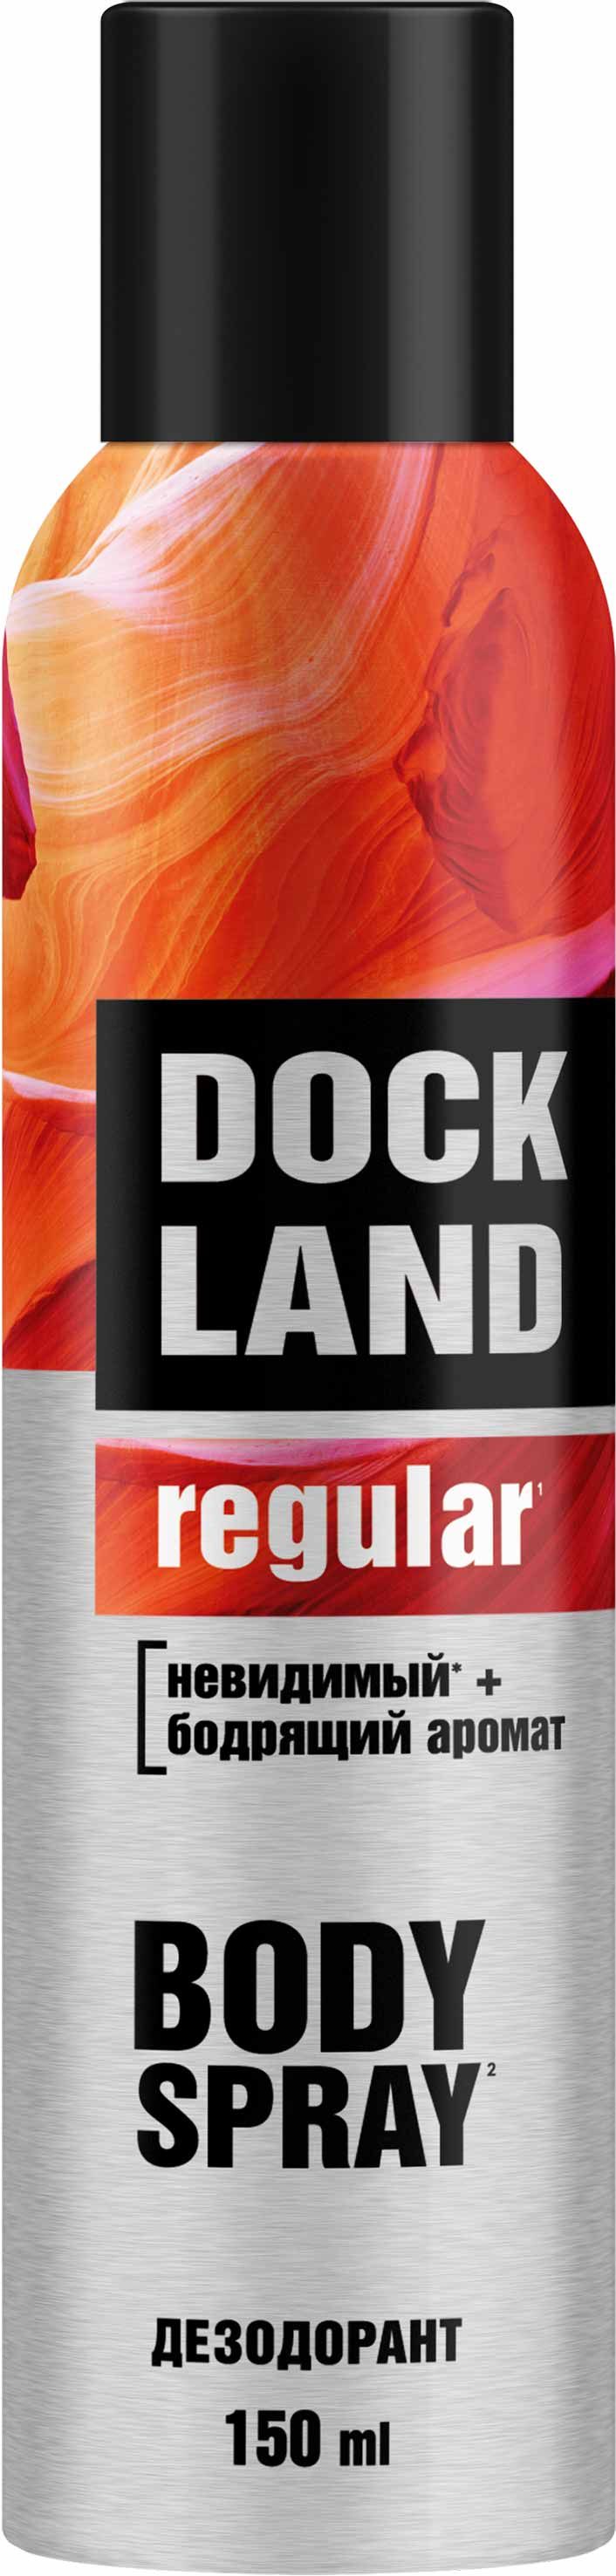 Dockland for men дезодорант спрей regular 150 мл